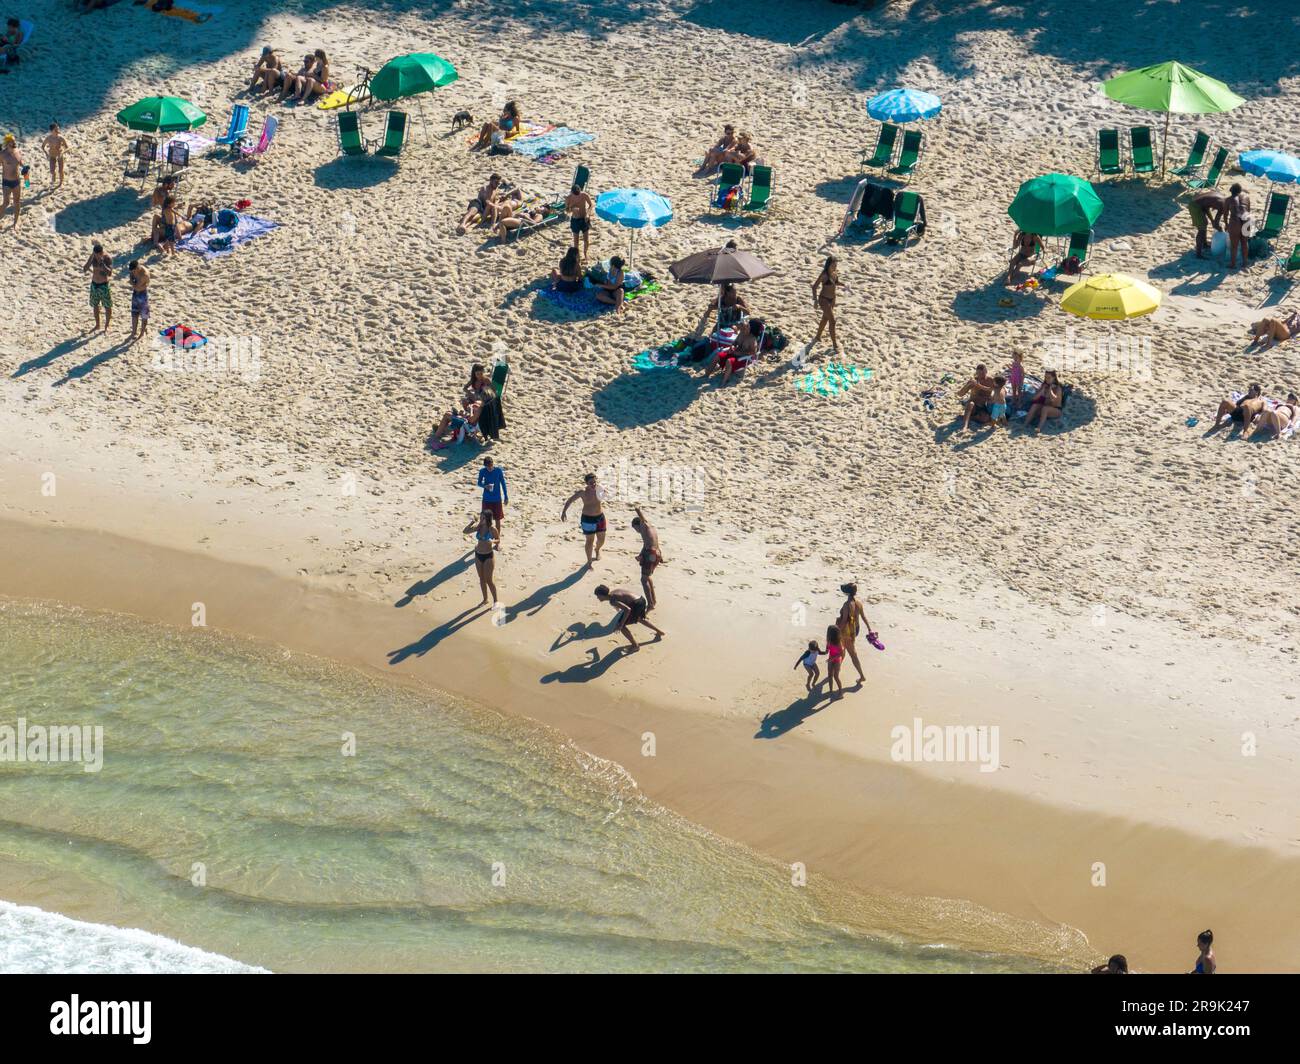 Vue aérienne de la plage d'Ipanema. Les gens se bronzent et jouent sur la plage, sports nautiques. Rio de Janeiro. Brésil Banque D'Images